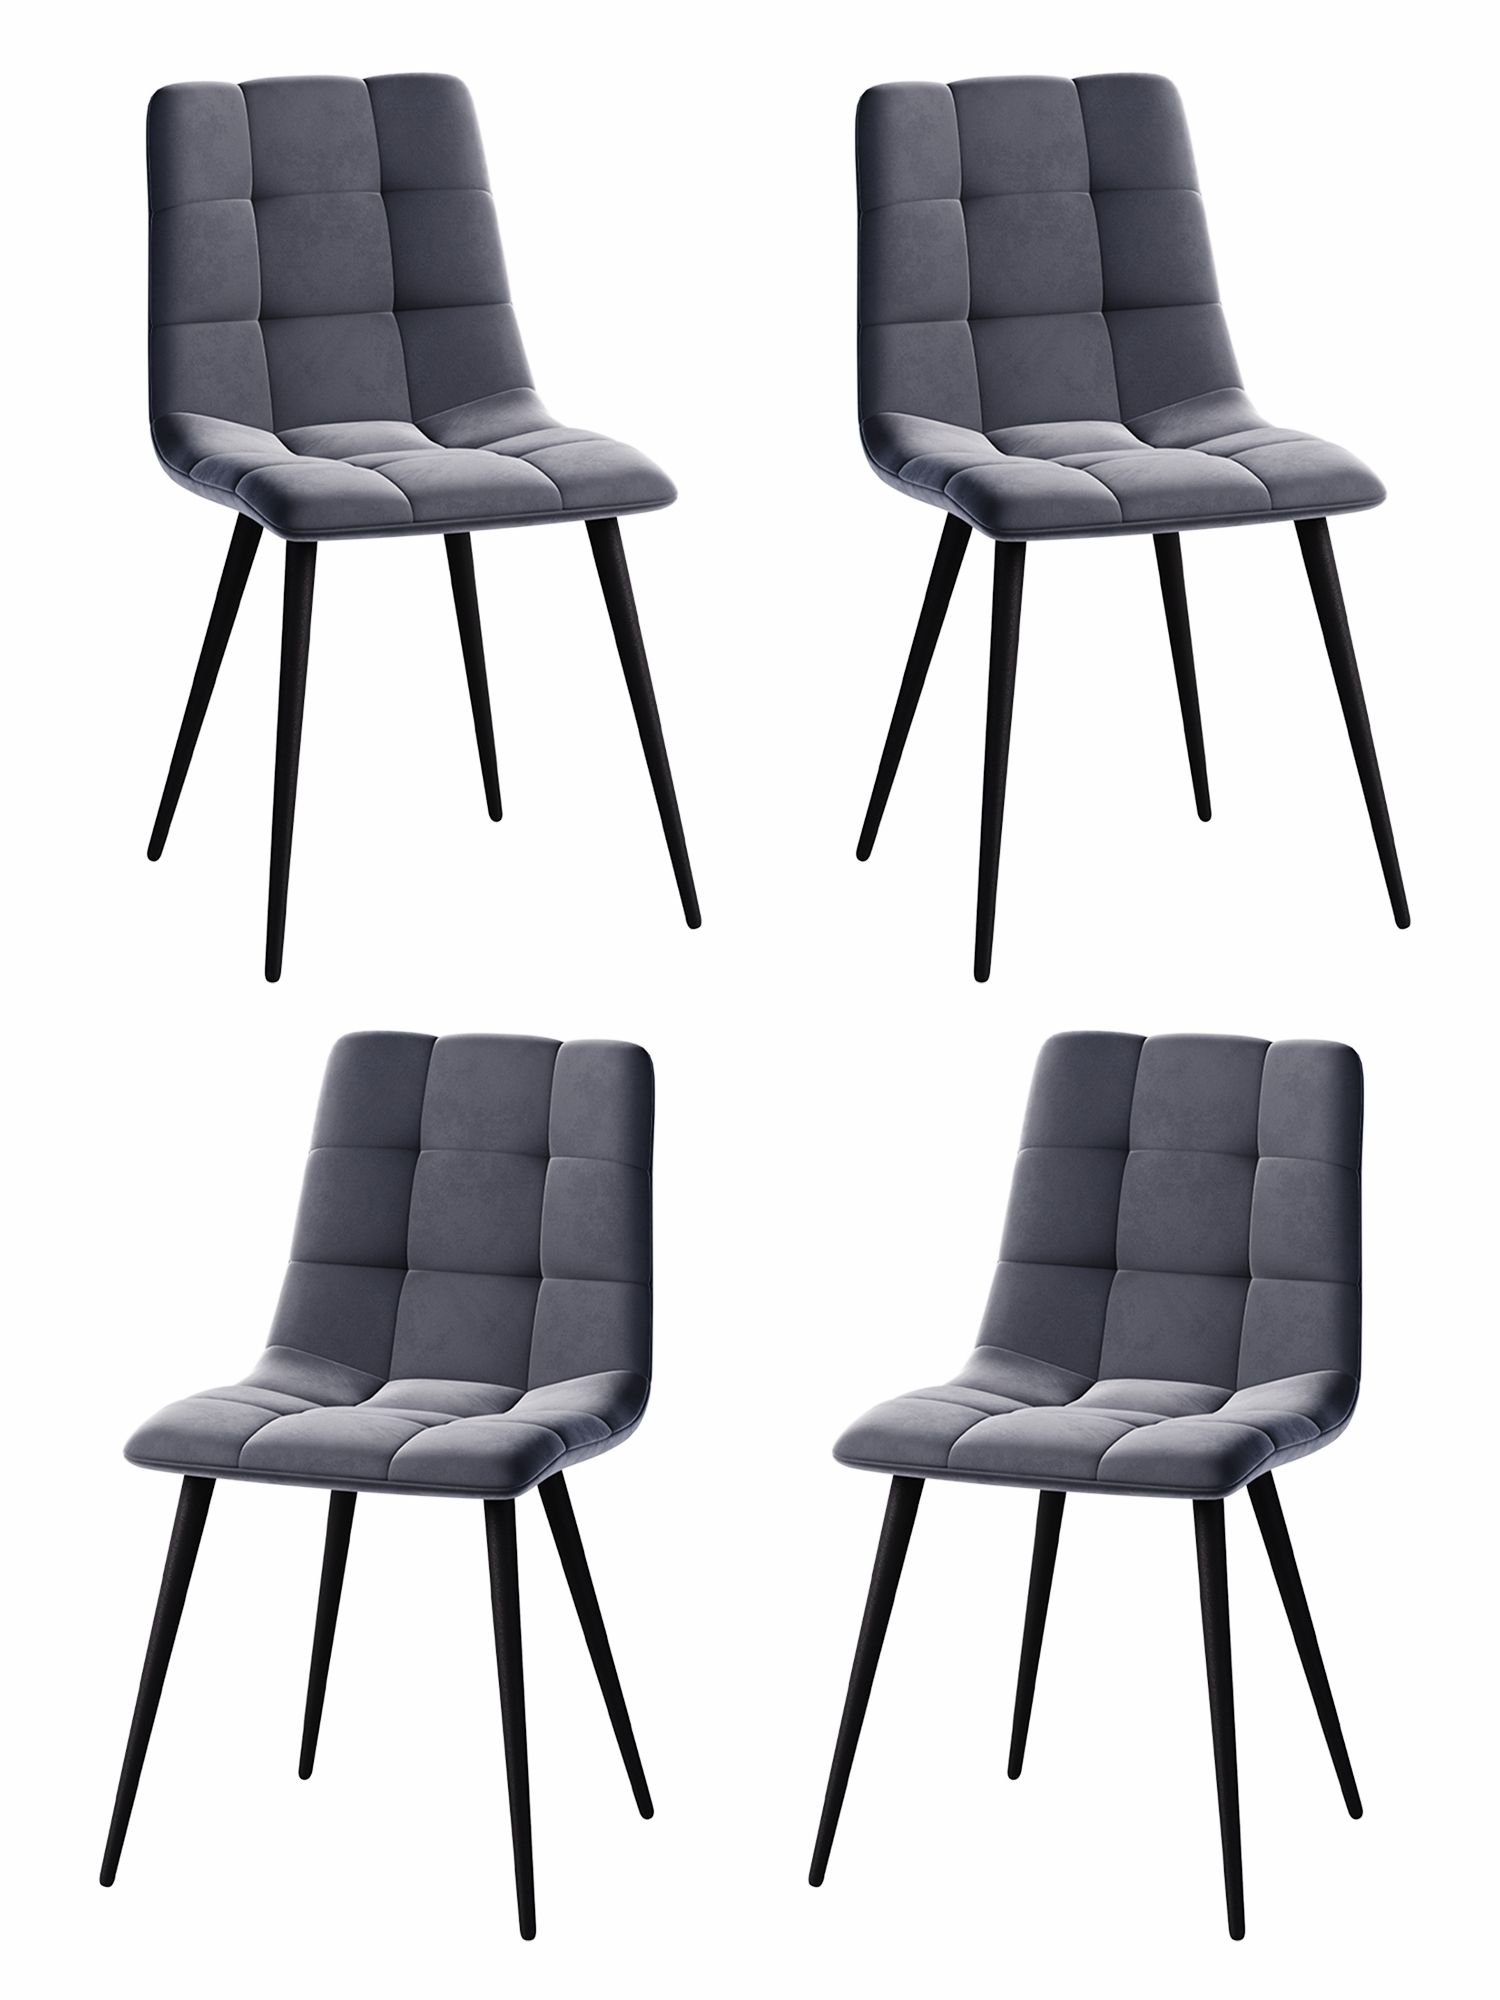 Комплект стульев для кухни 4 шт